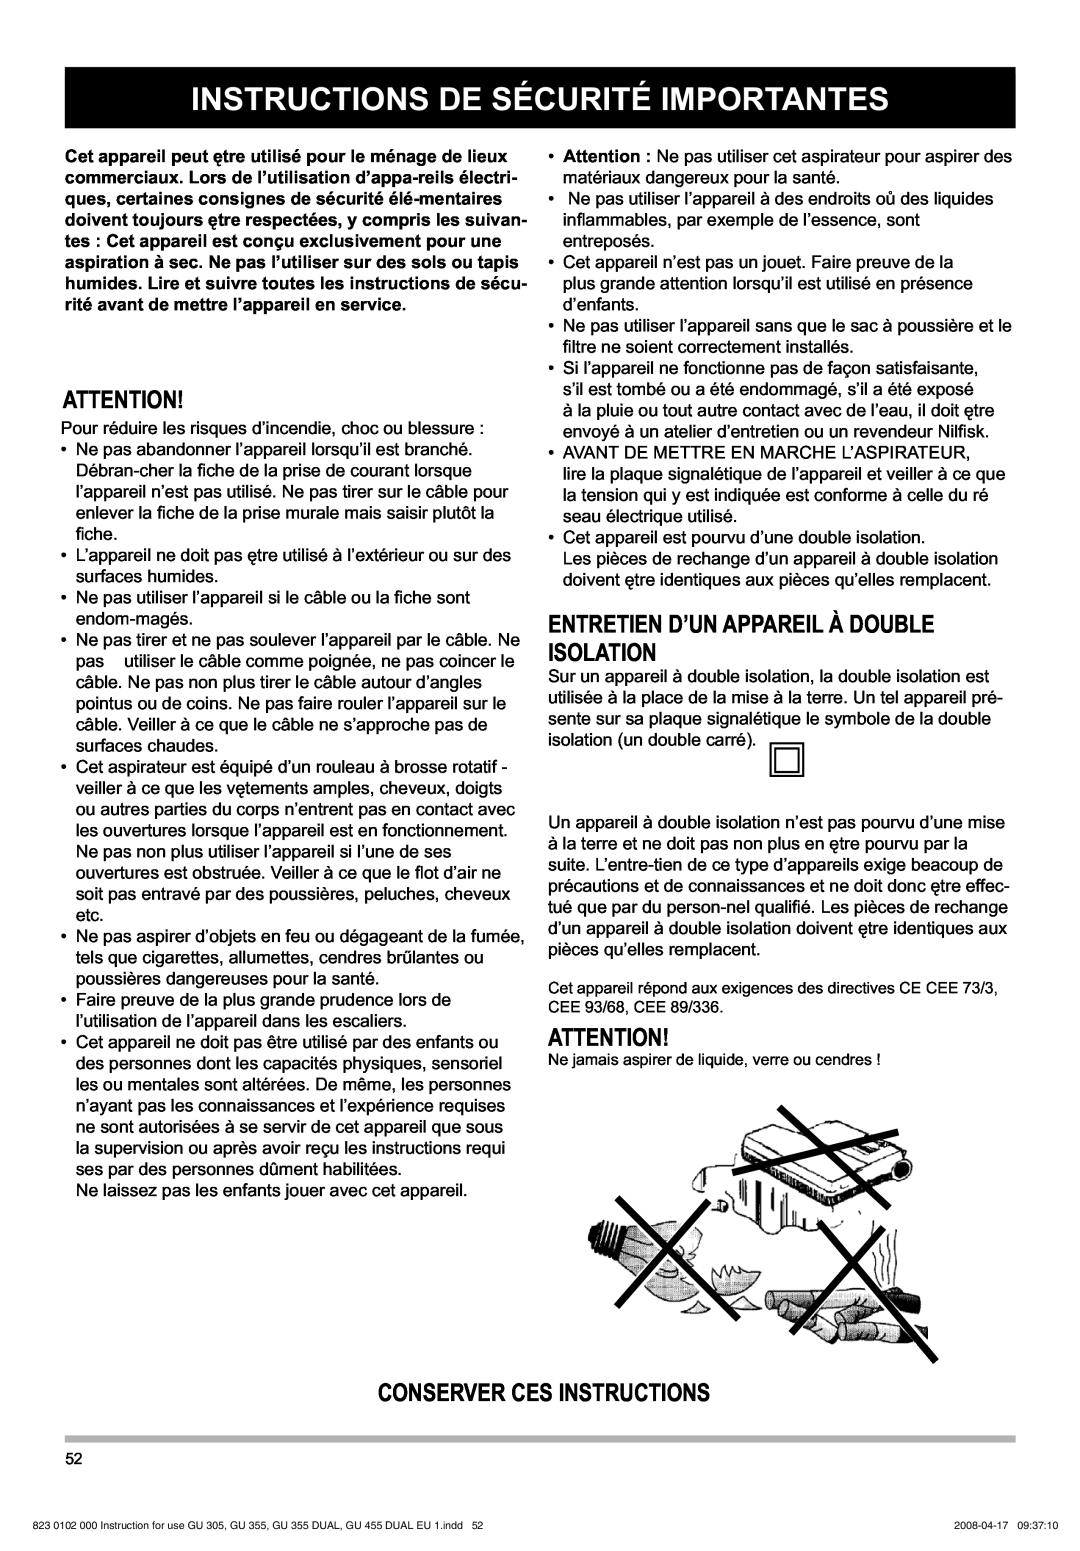 Nilfisk-Advance America GU 12 SMU, GU 305 Instructions De Sécurité Importantes, Entretien D’Un Appareil À Double Isolation 